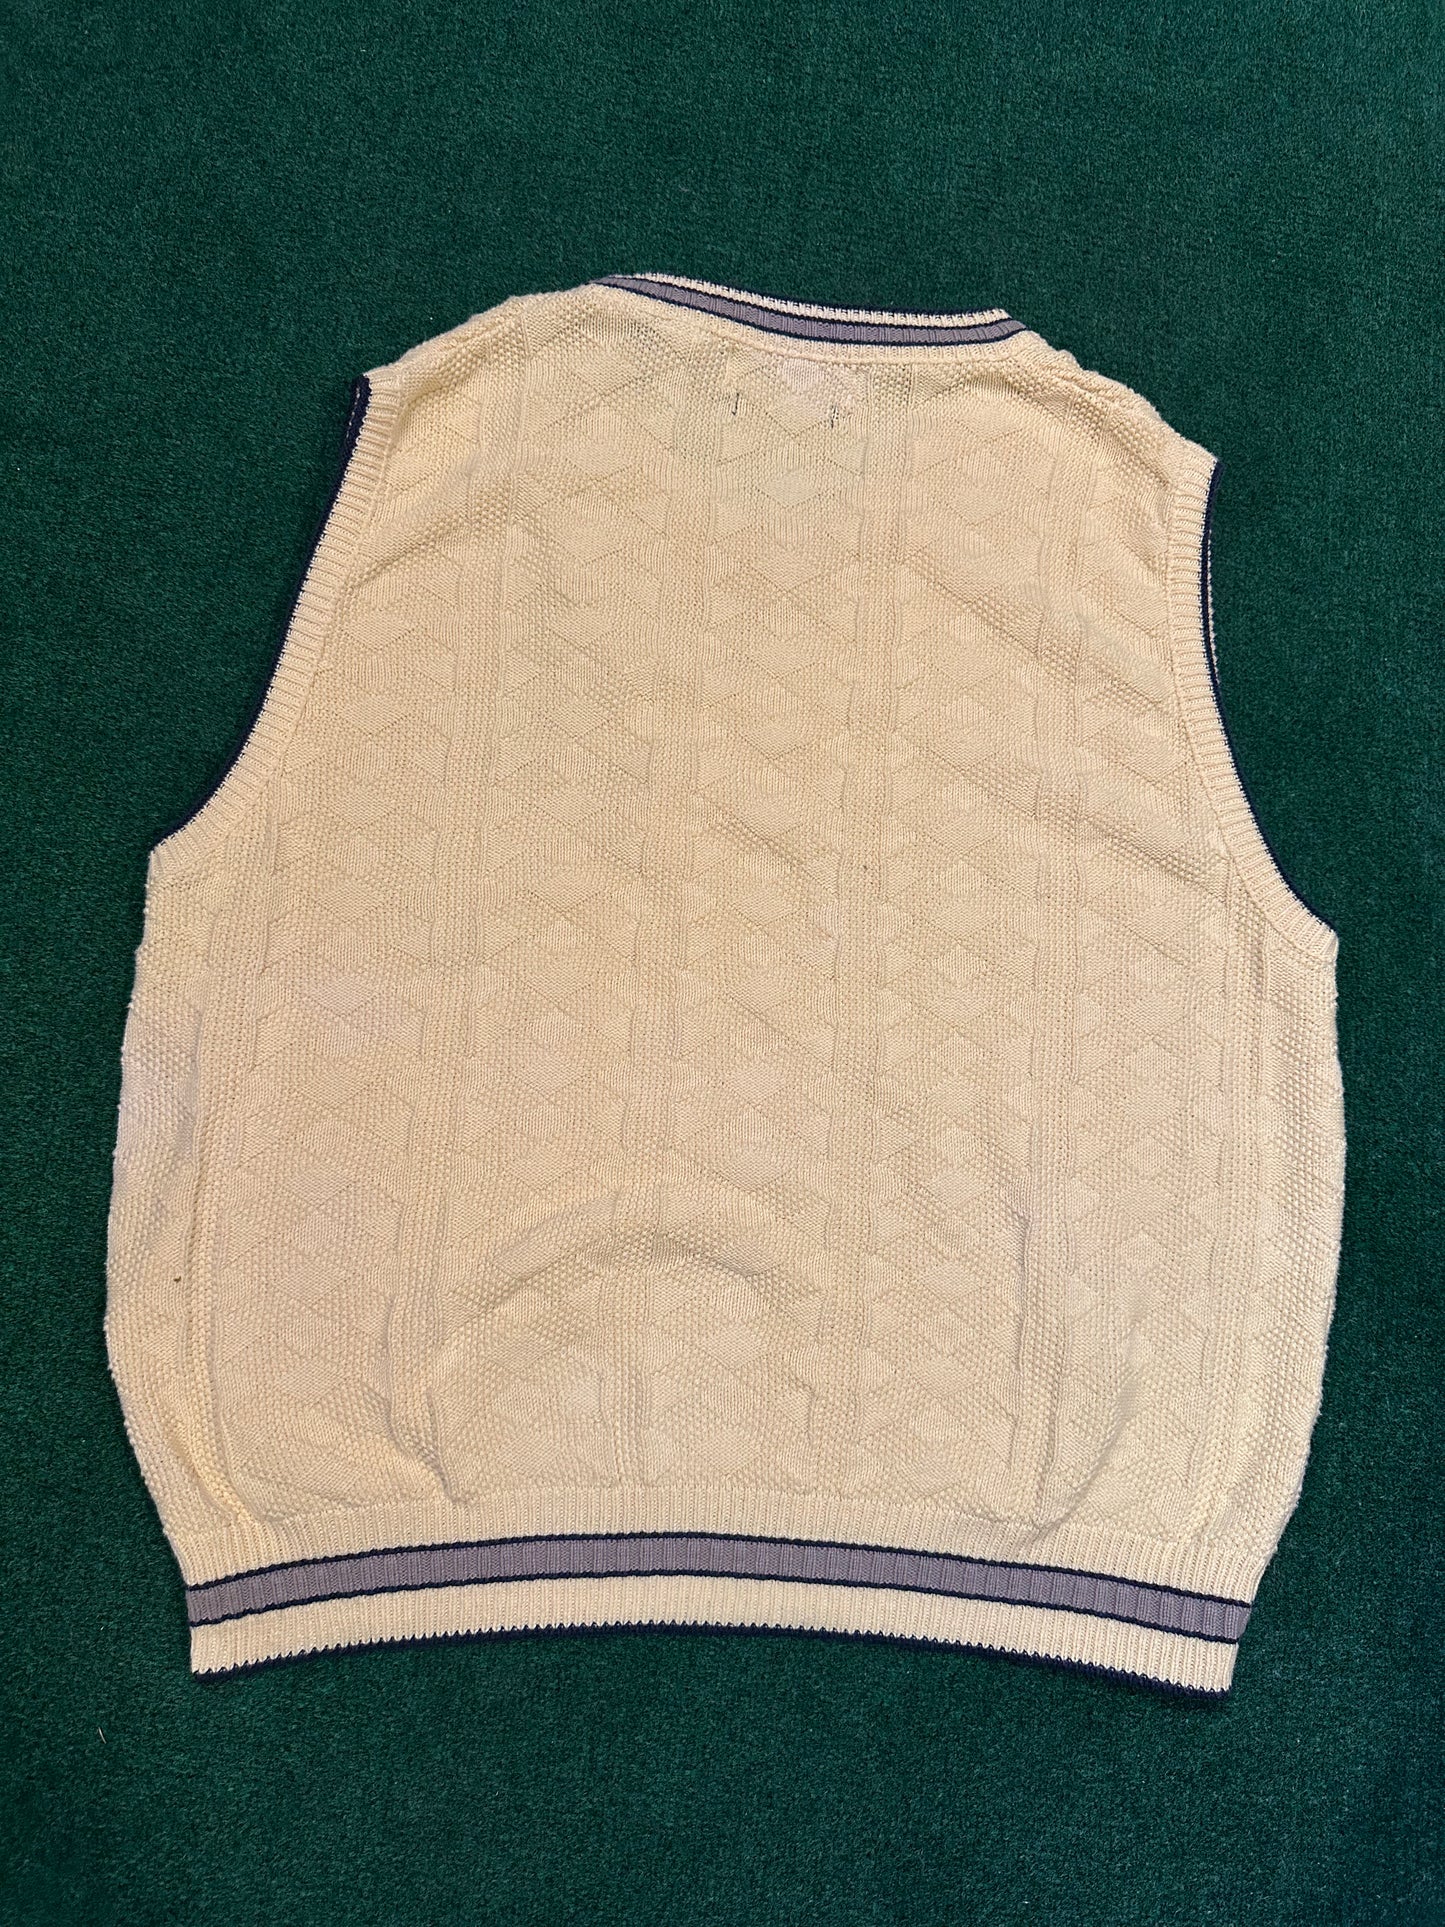 Vintage Cypress Links Sweater Vest